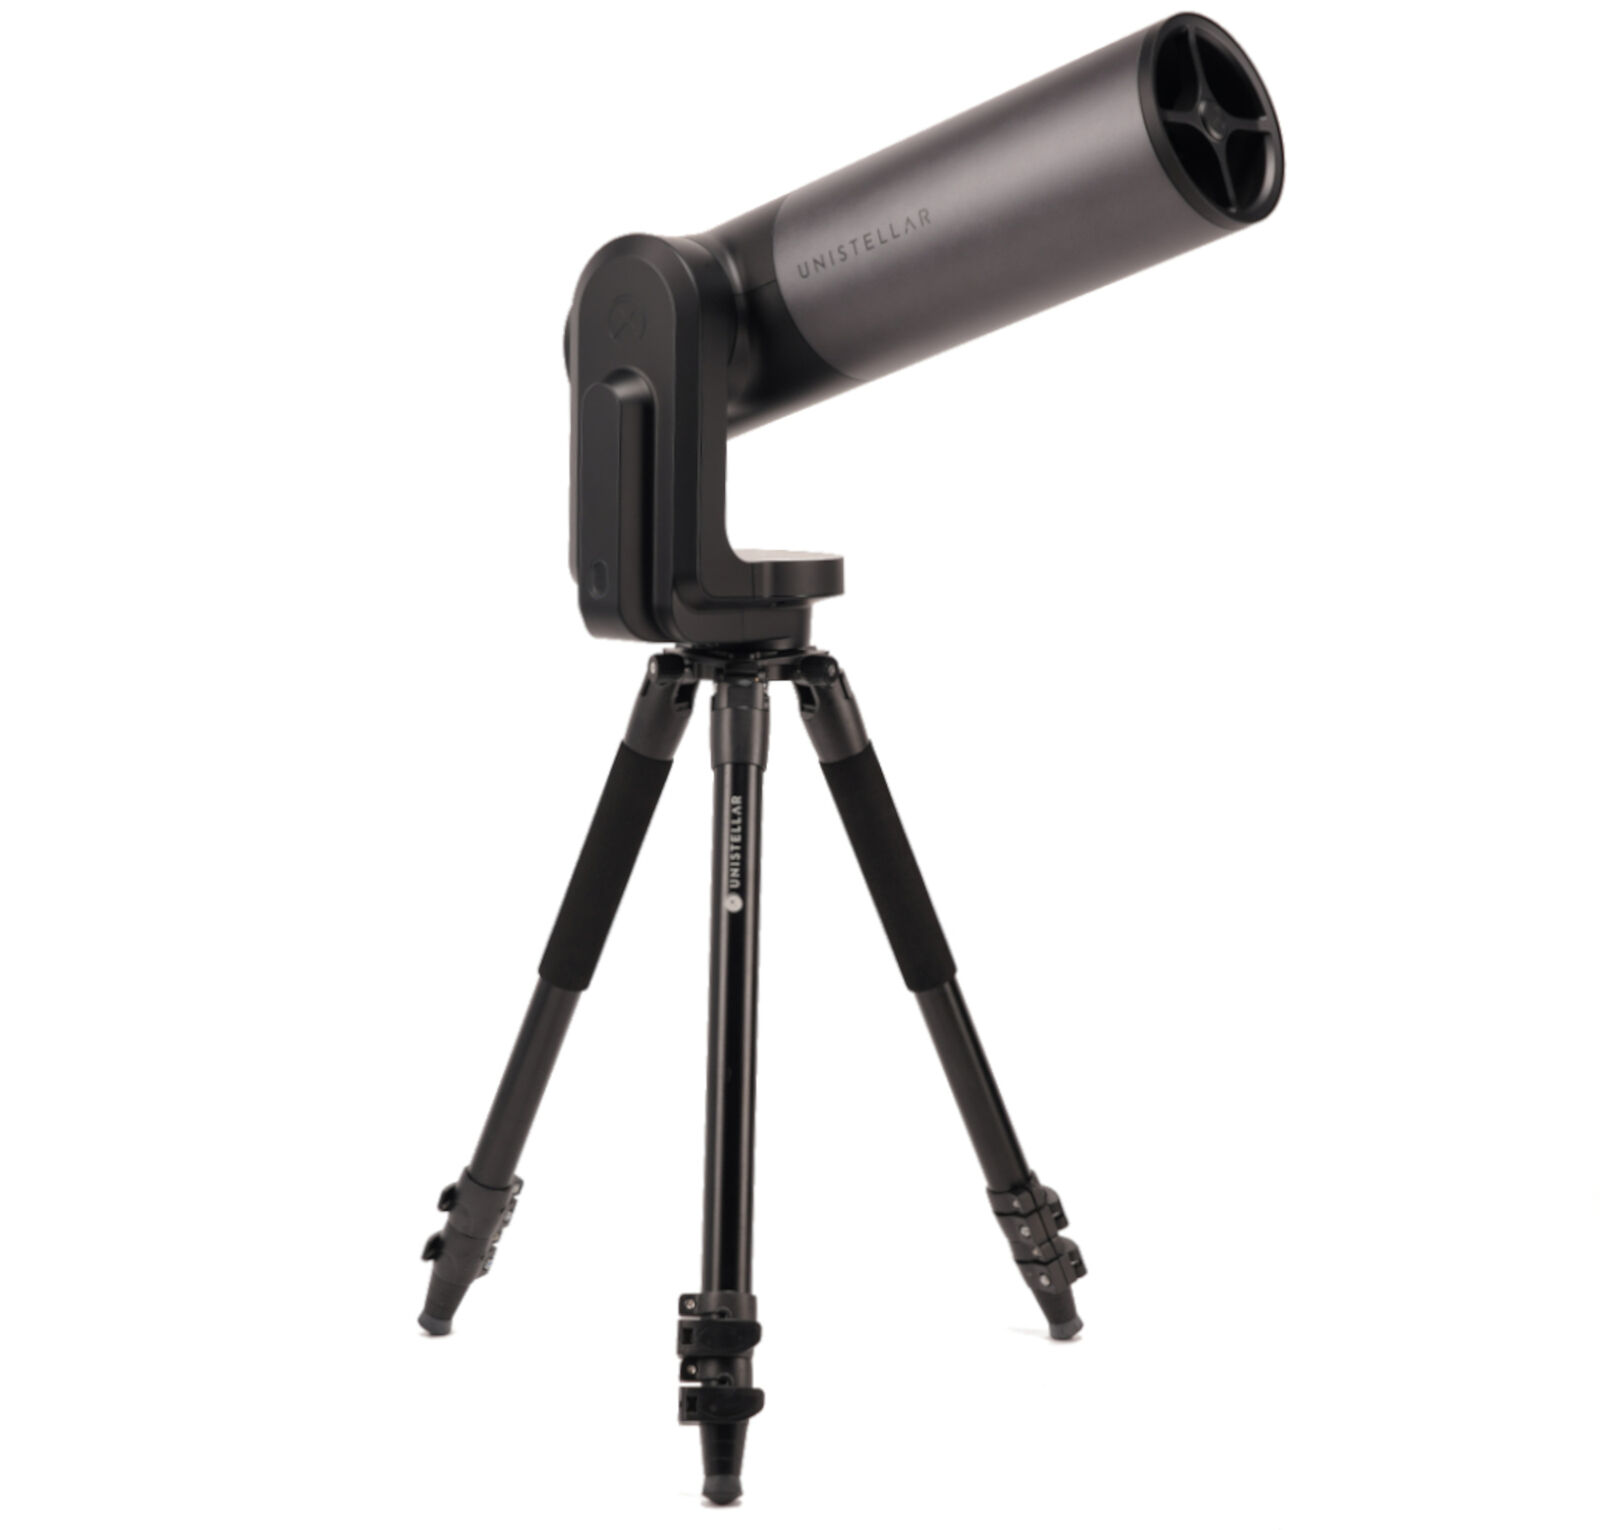 Unistellar eVscope eQuinox Digital Telescope